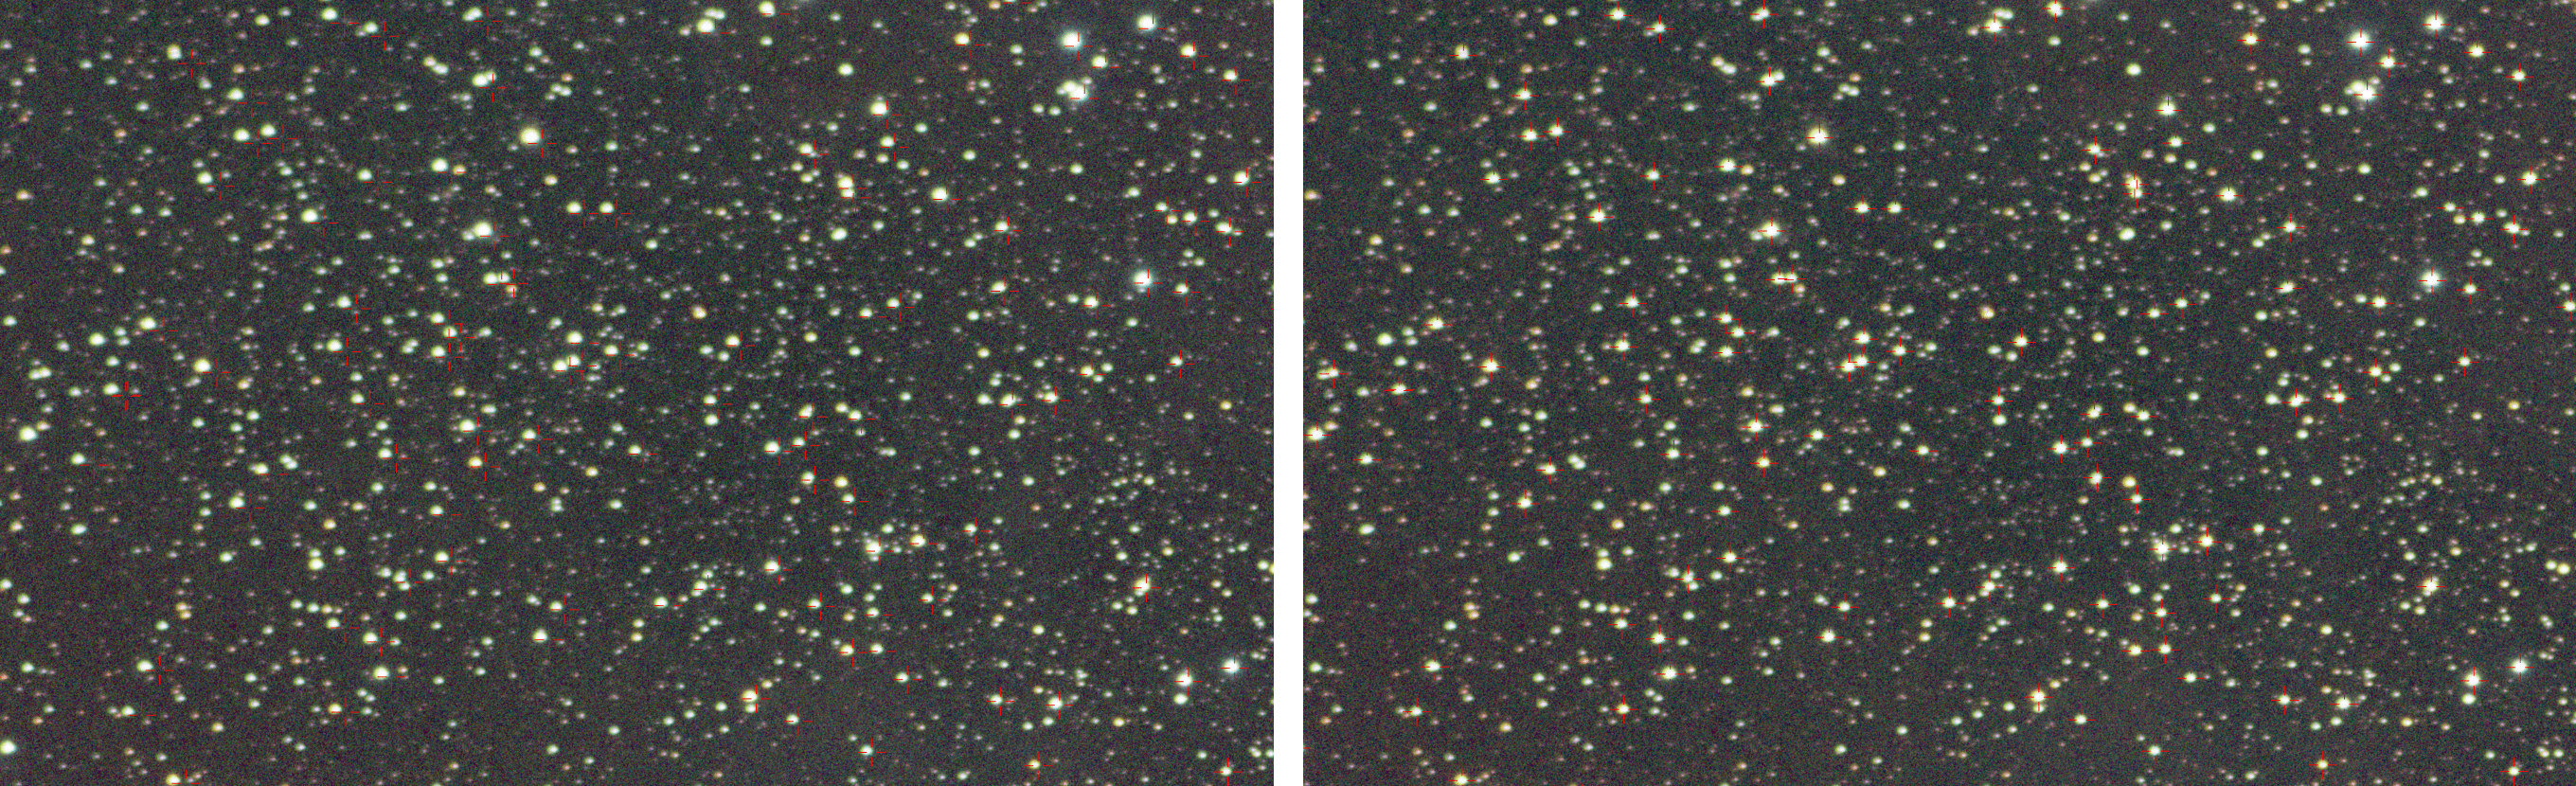 Comparaison d&rsquo;une astrométrie faite en linéaire, à gauche, et en cubique, à droite. On voit que les étoiles du catalogue (mires rouges) sont pointées très précisément (cliquer pour zoomer).